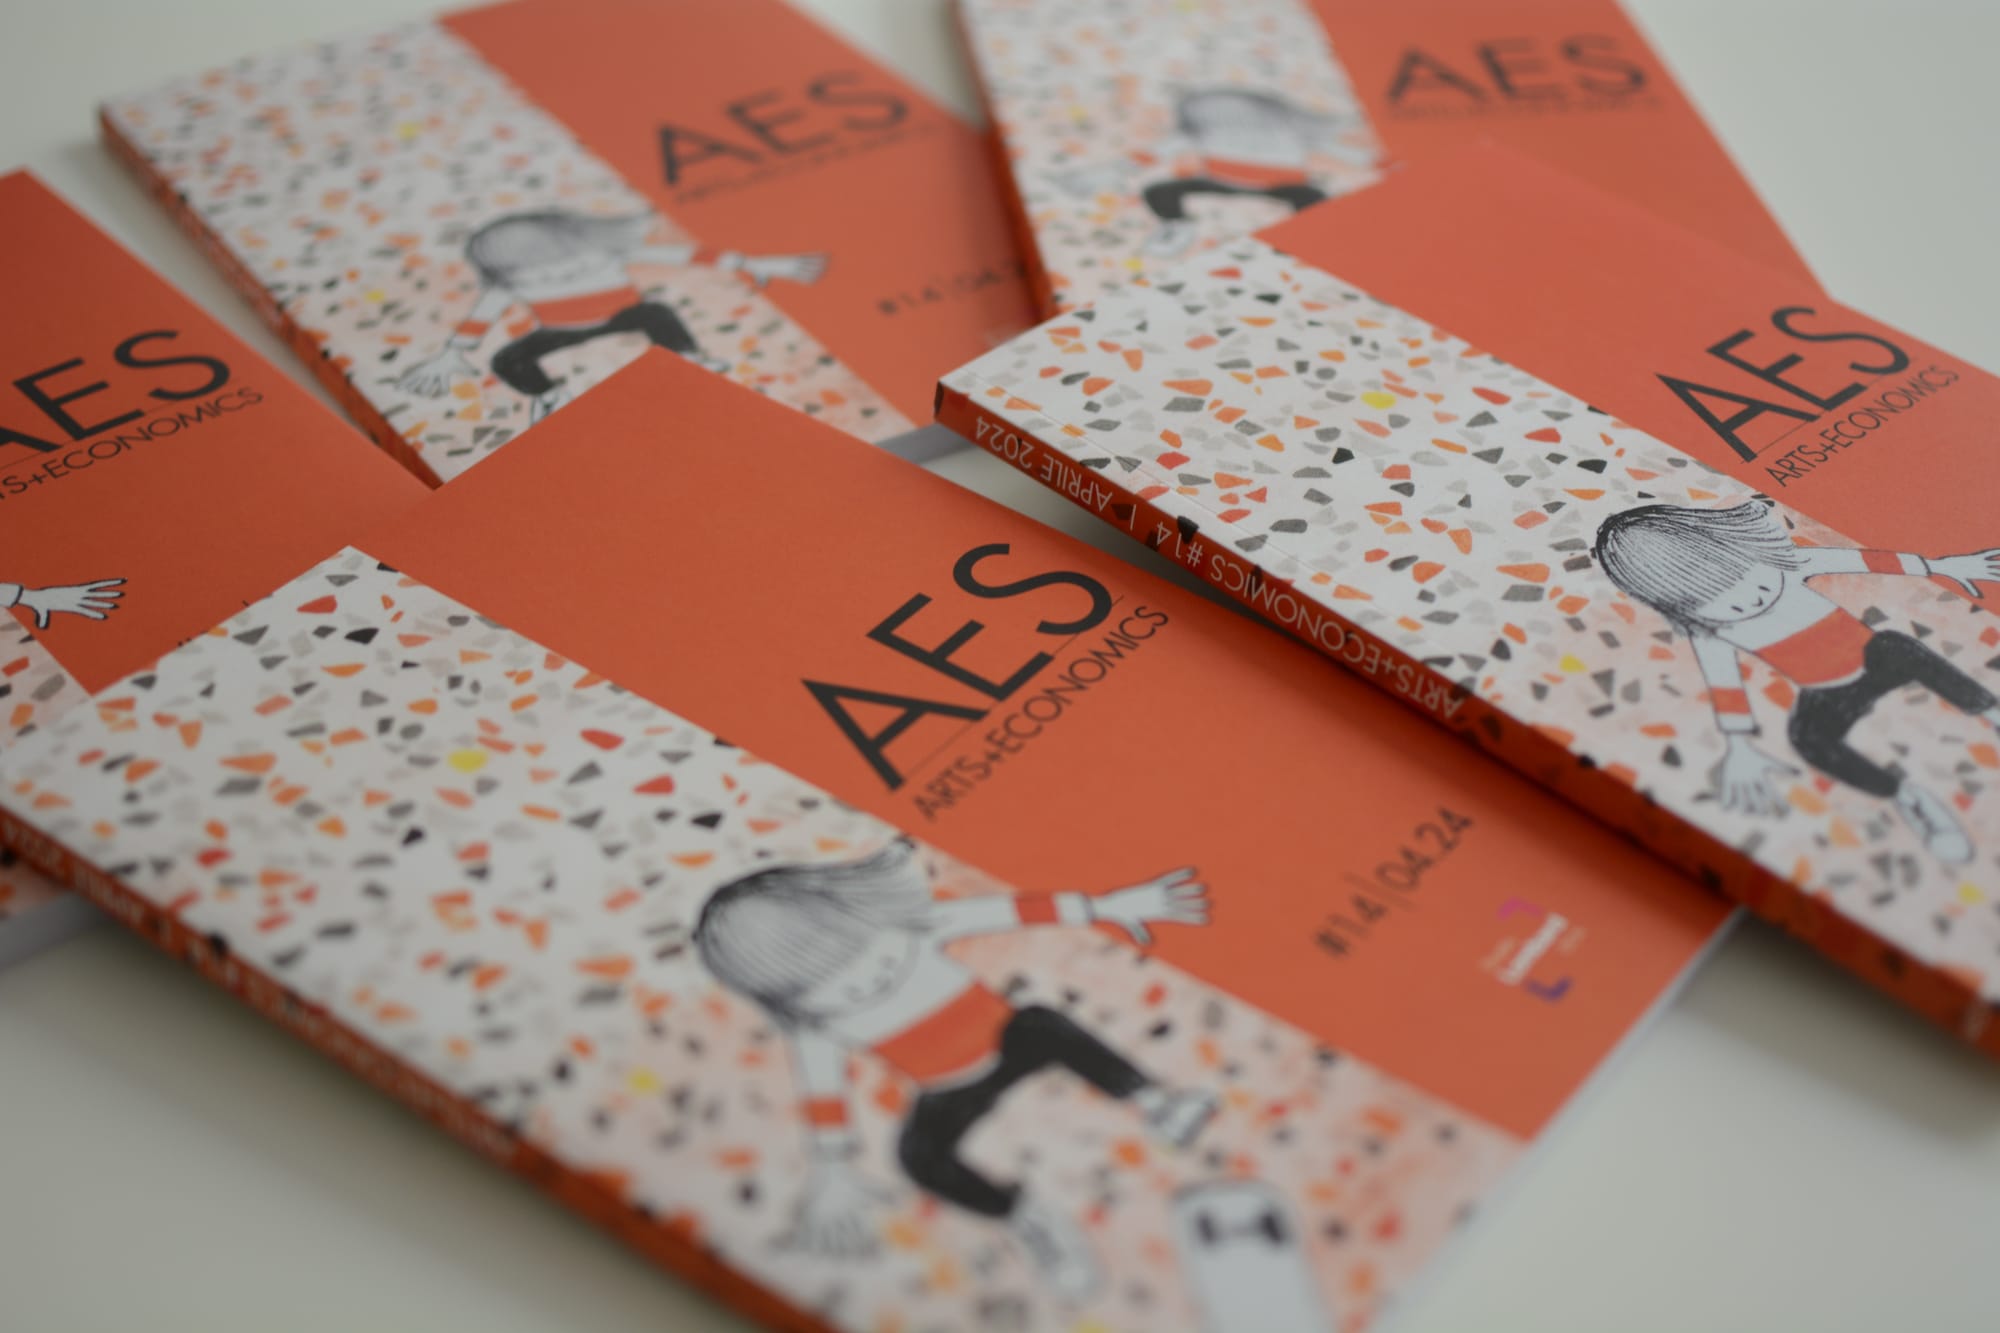 Pubblicato il nuovo numero di AES Arts+Economics sugli archivi del design